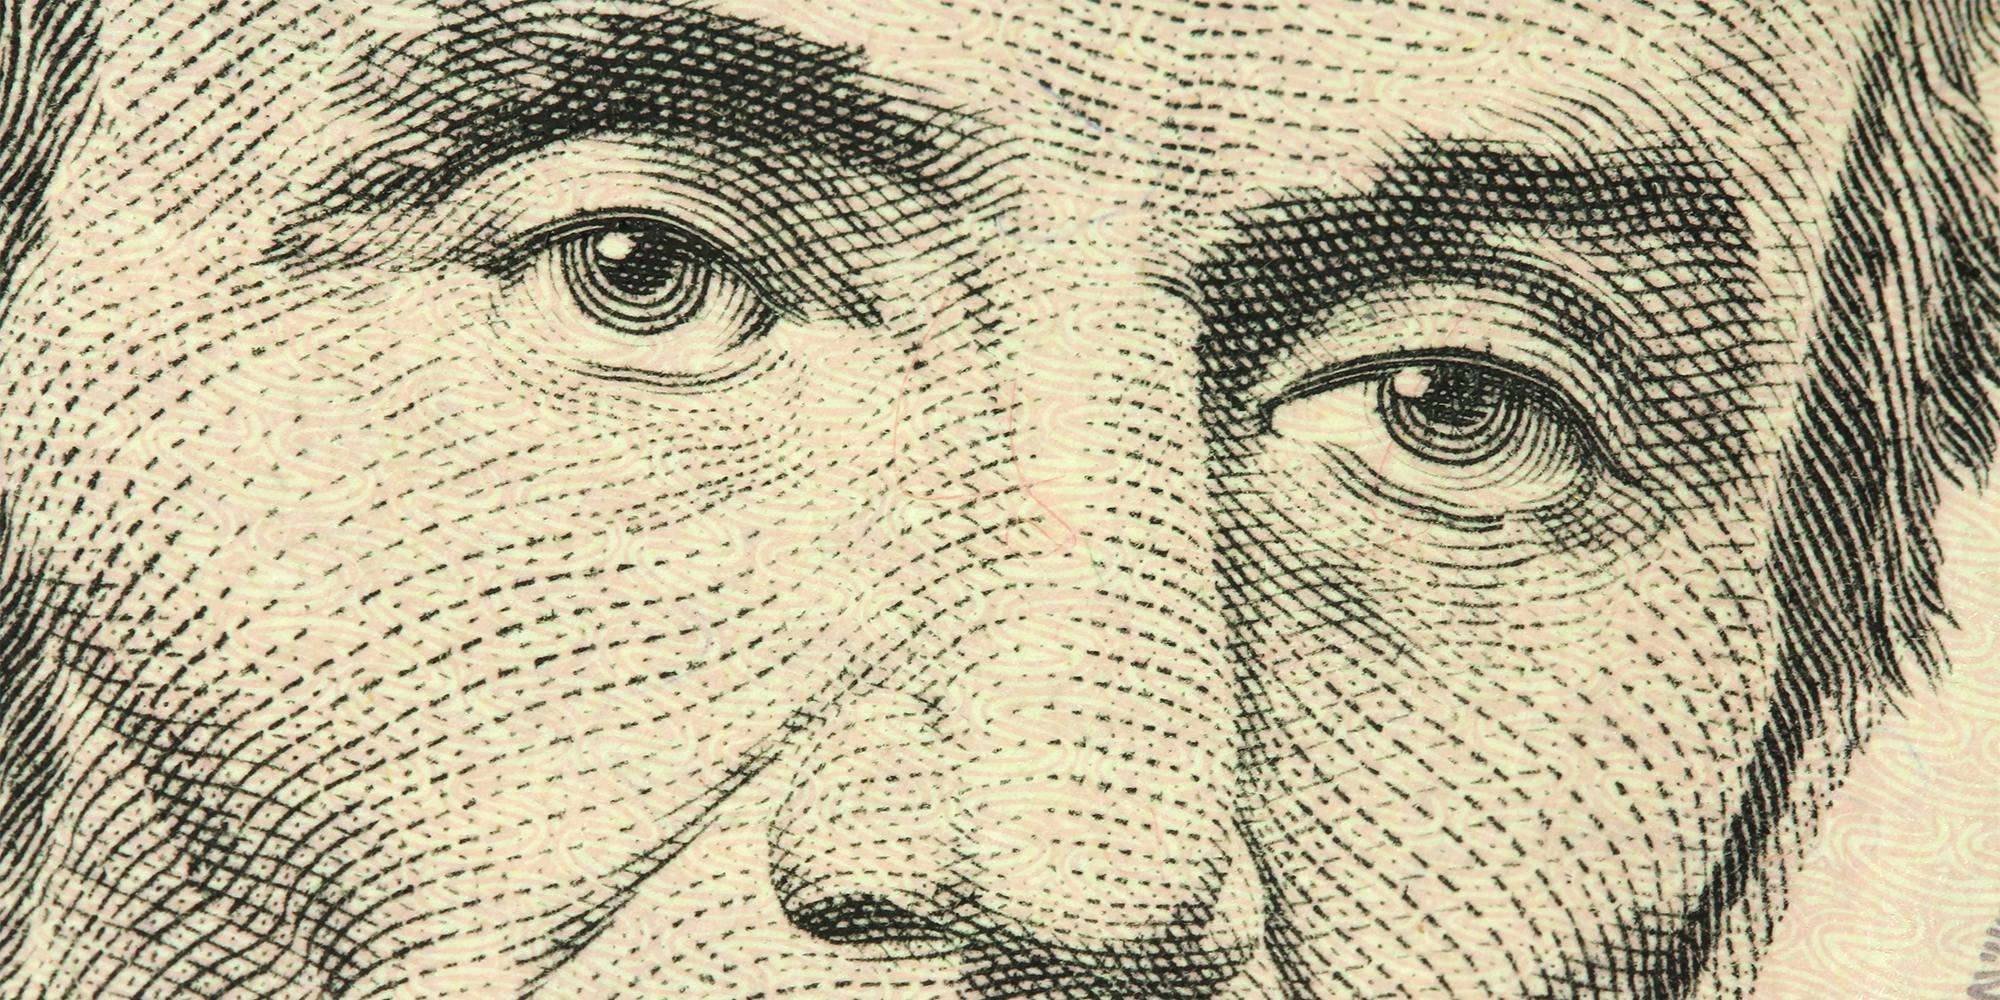 Abraham Lincoln's portrait closeup